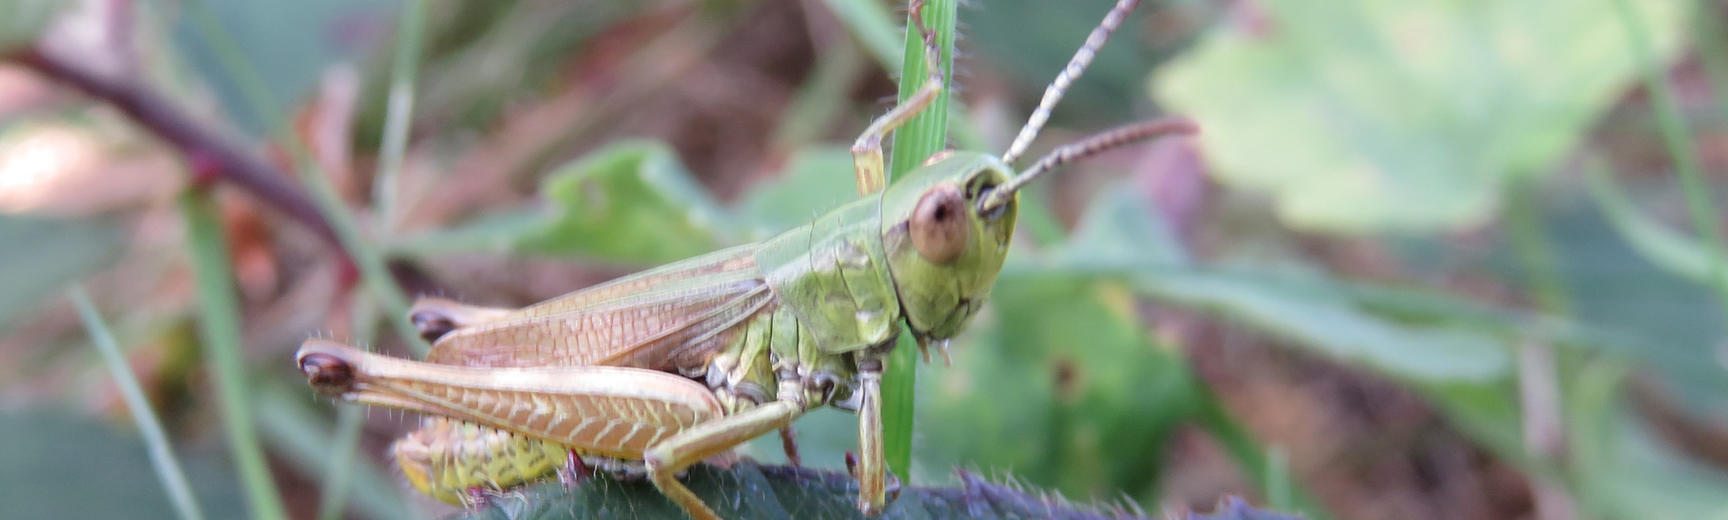 grasshopper ic